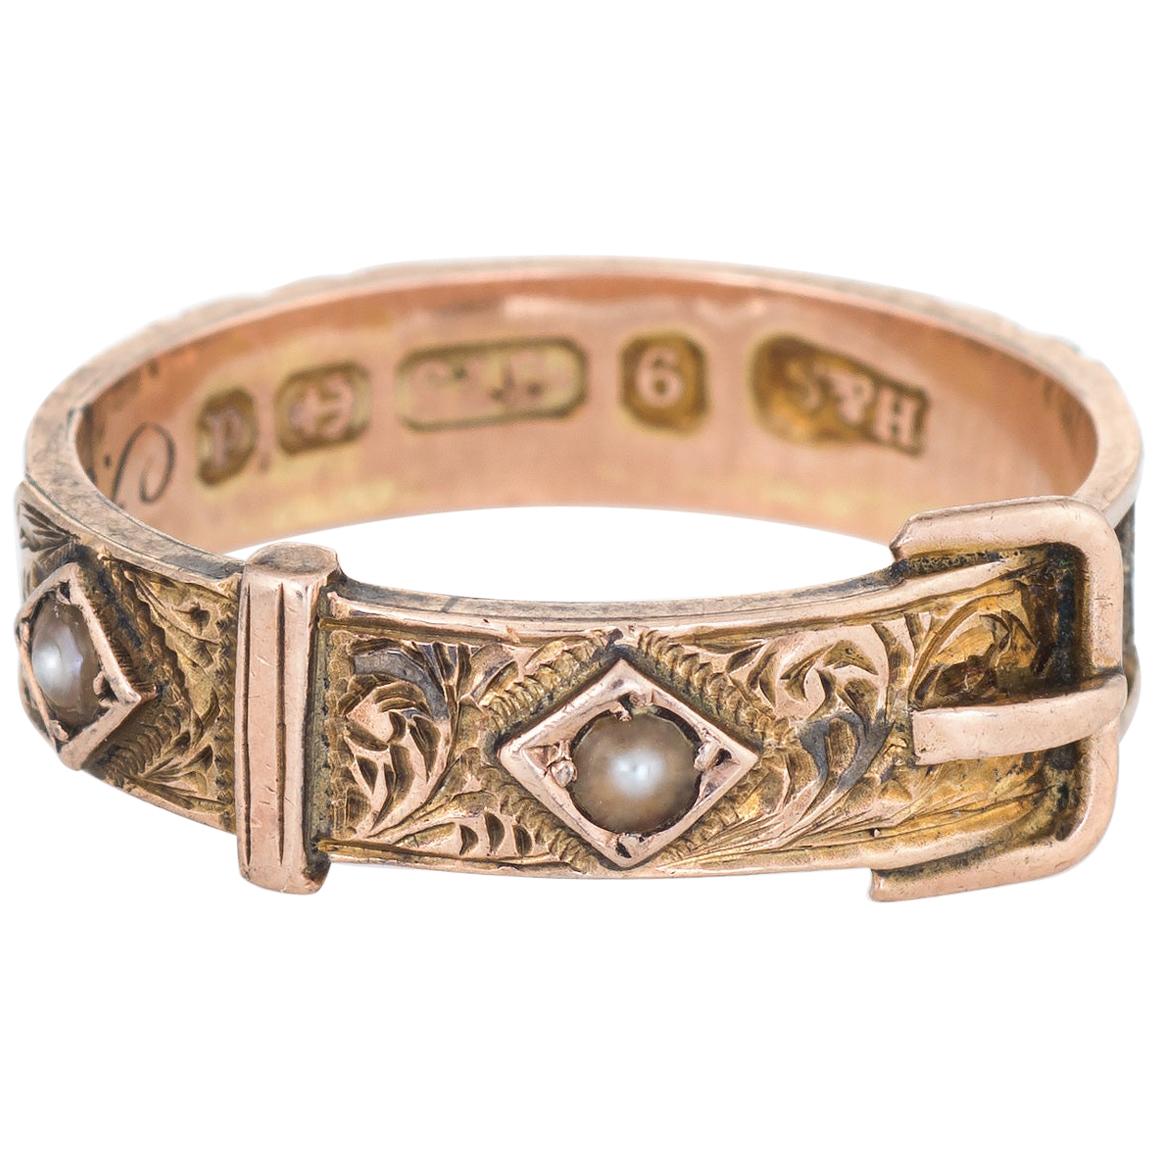 Antique Edwardian circa 1903 Hair Ring Buckle 9 Karat Rose Gold Mourning Jewelry